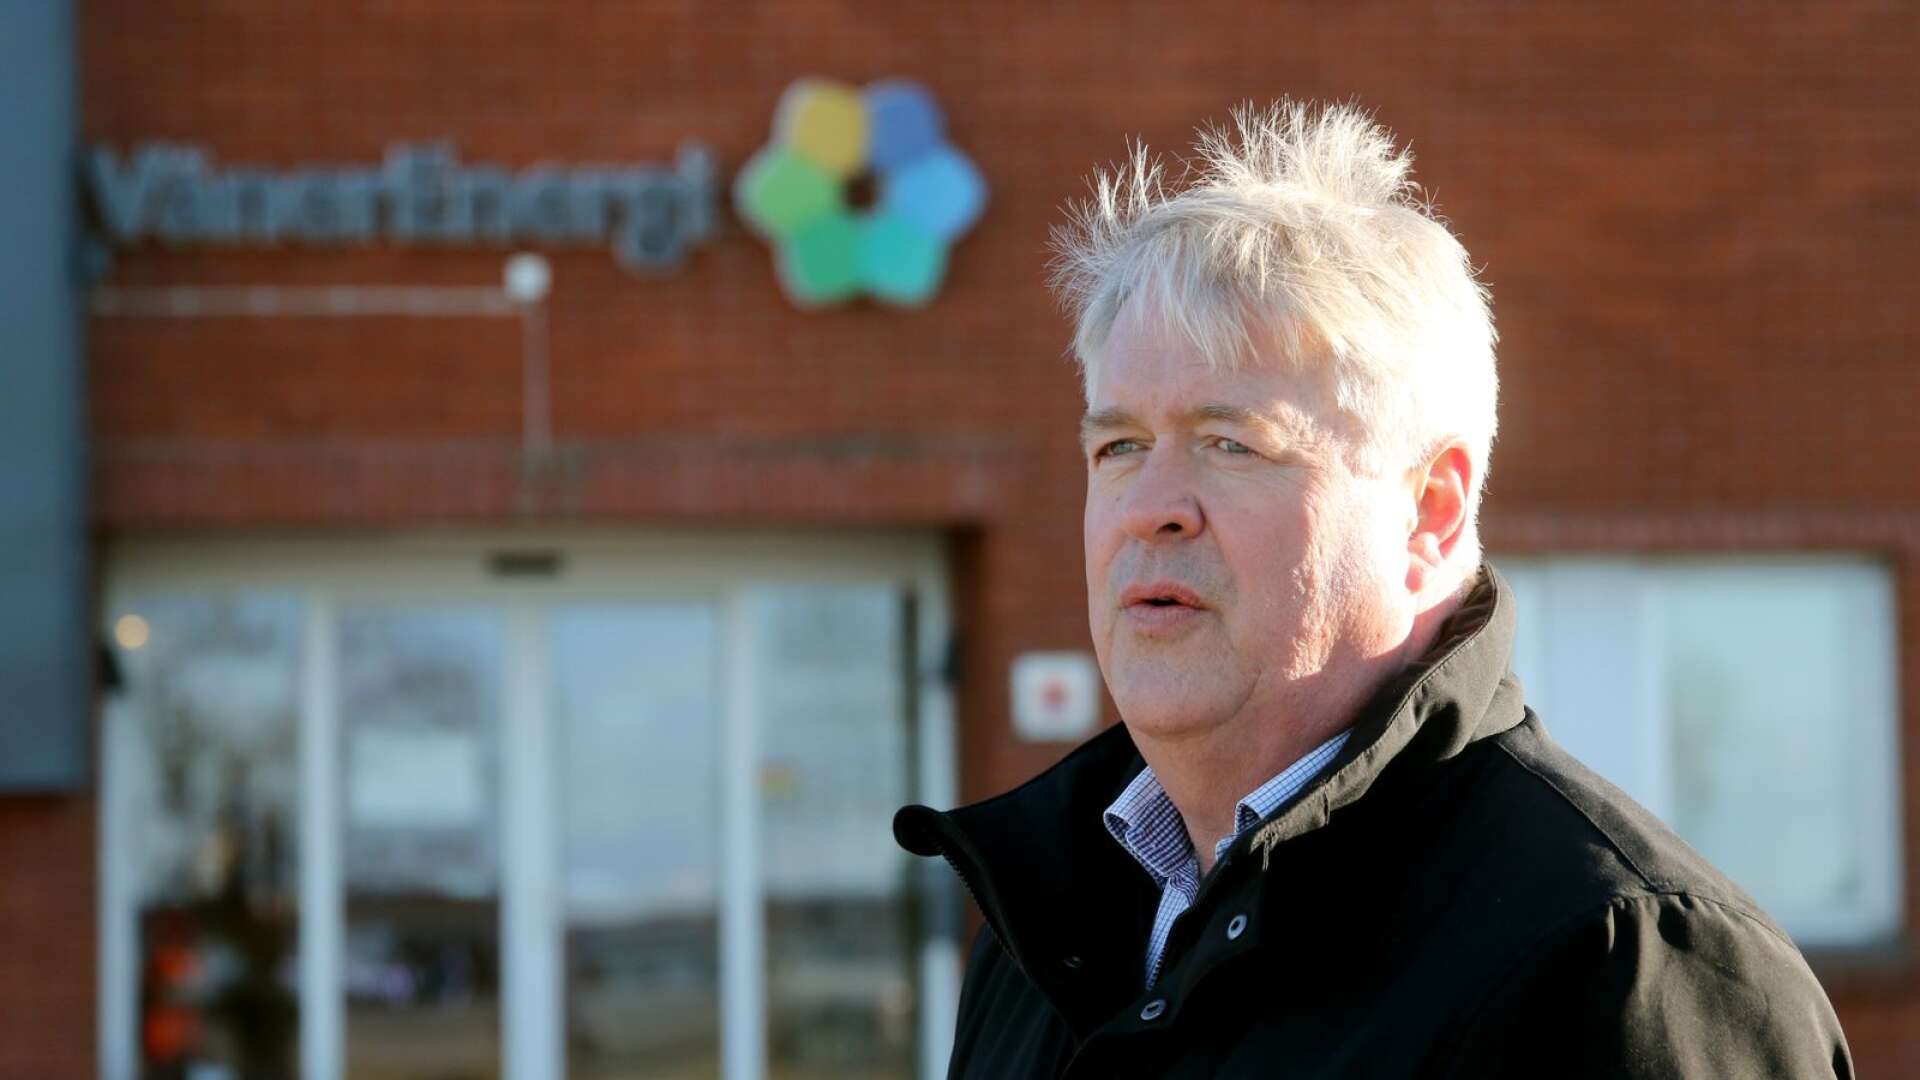 Vänerenergis vd Rolf Åkesson berättar att energibolaget använder sig av den bäst lämpade metoden.